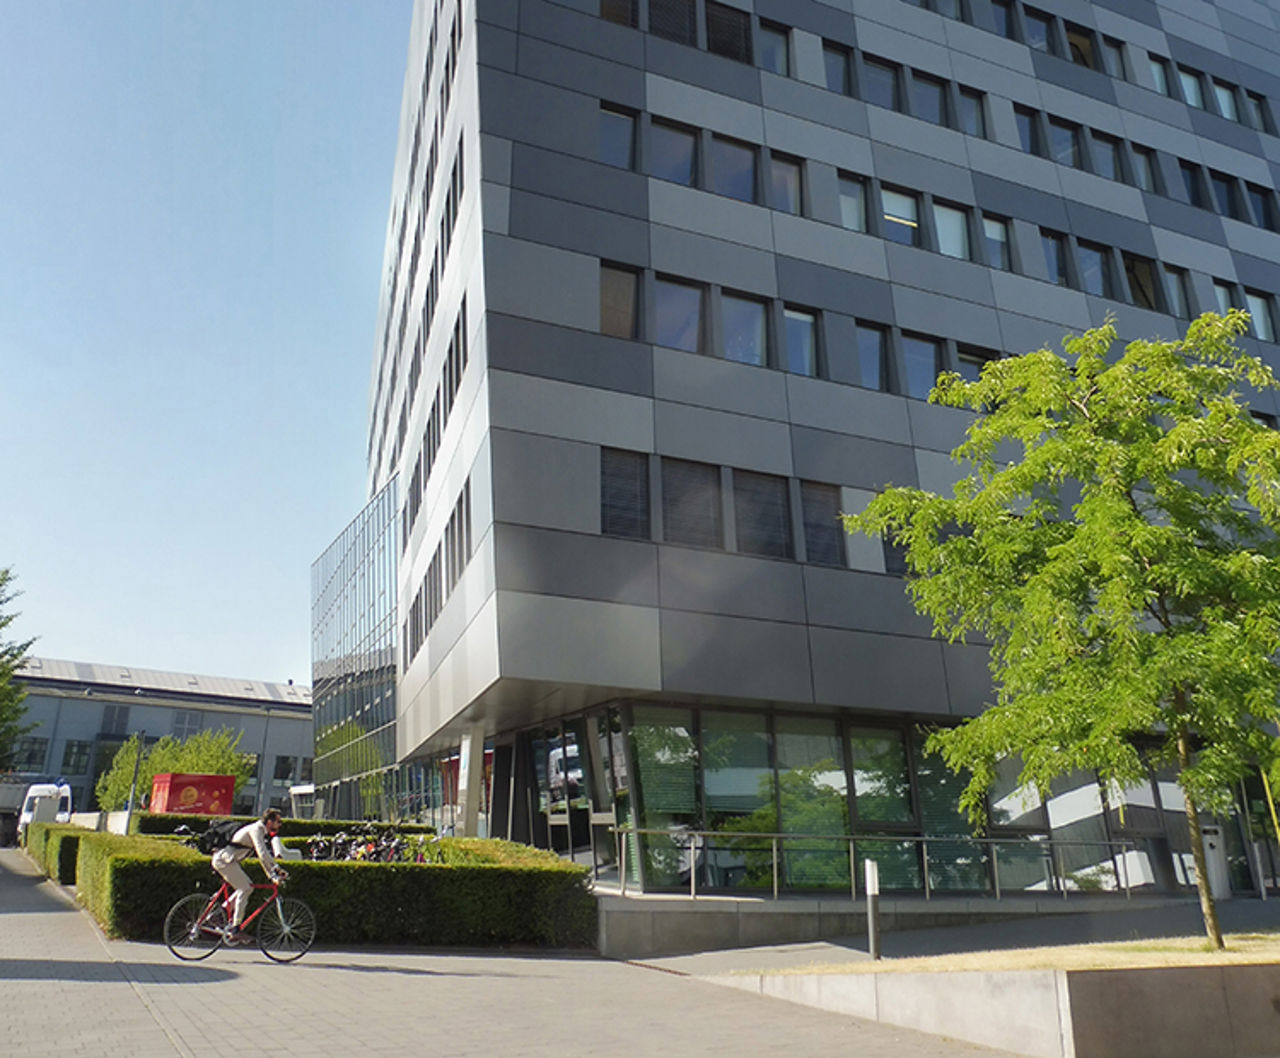 Statkraftsbüro in Düsseldorf